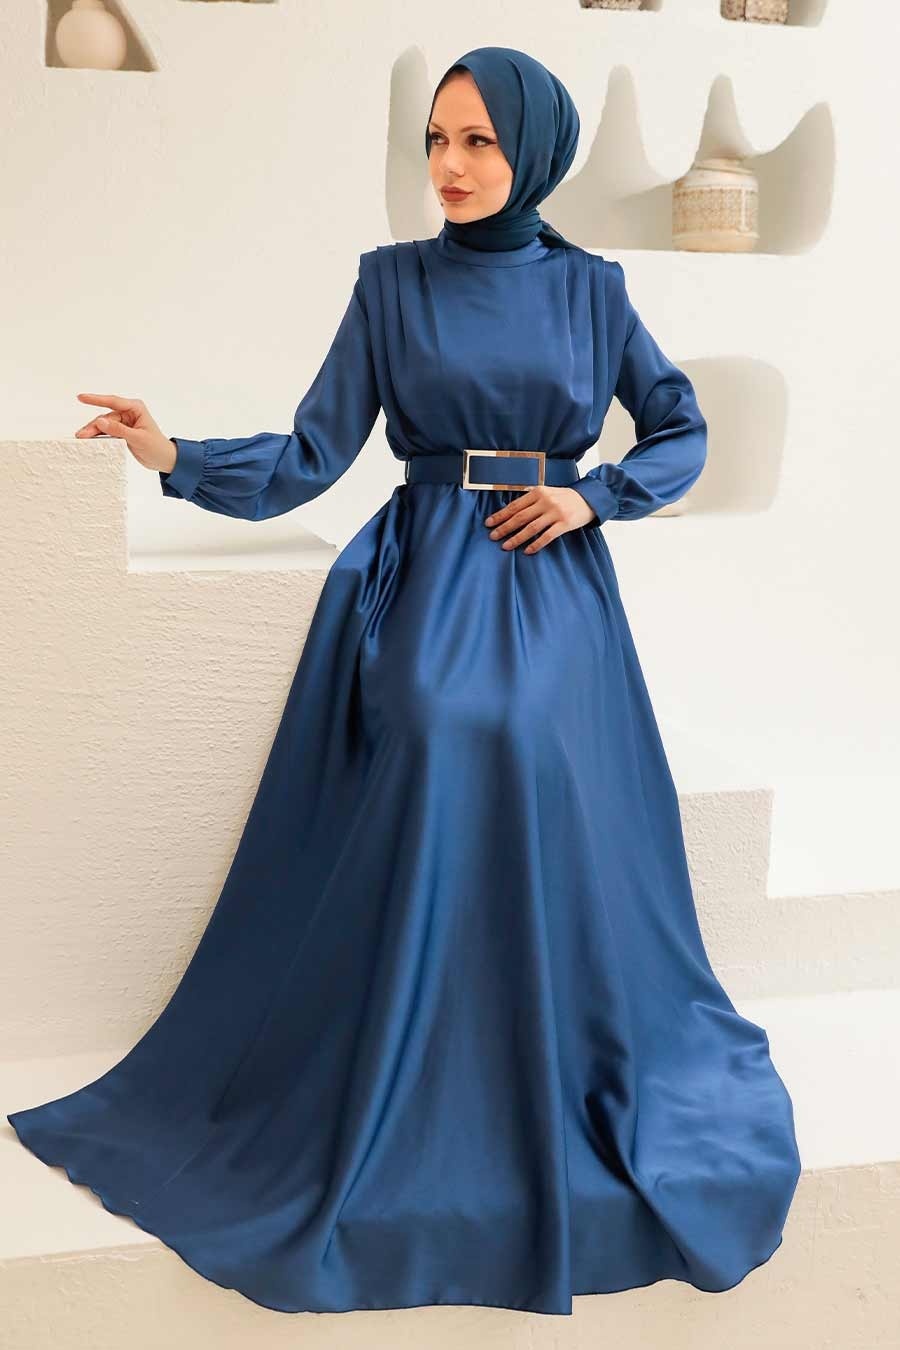 Tesettürlü Abiye Elbise - Tokalı Kemerli Saten İndigo Mavisi Tesettür Abiye Elbise 3378IM